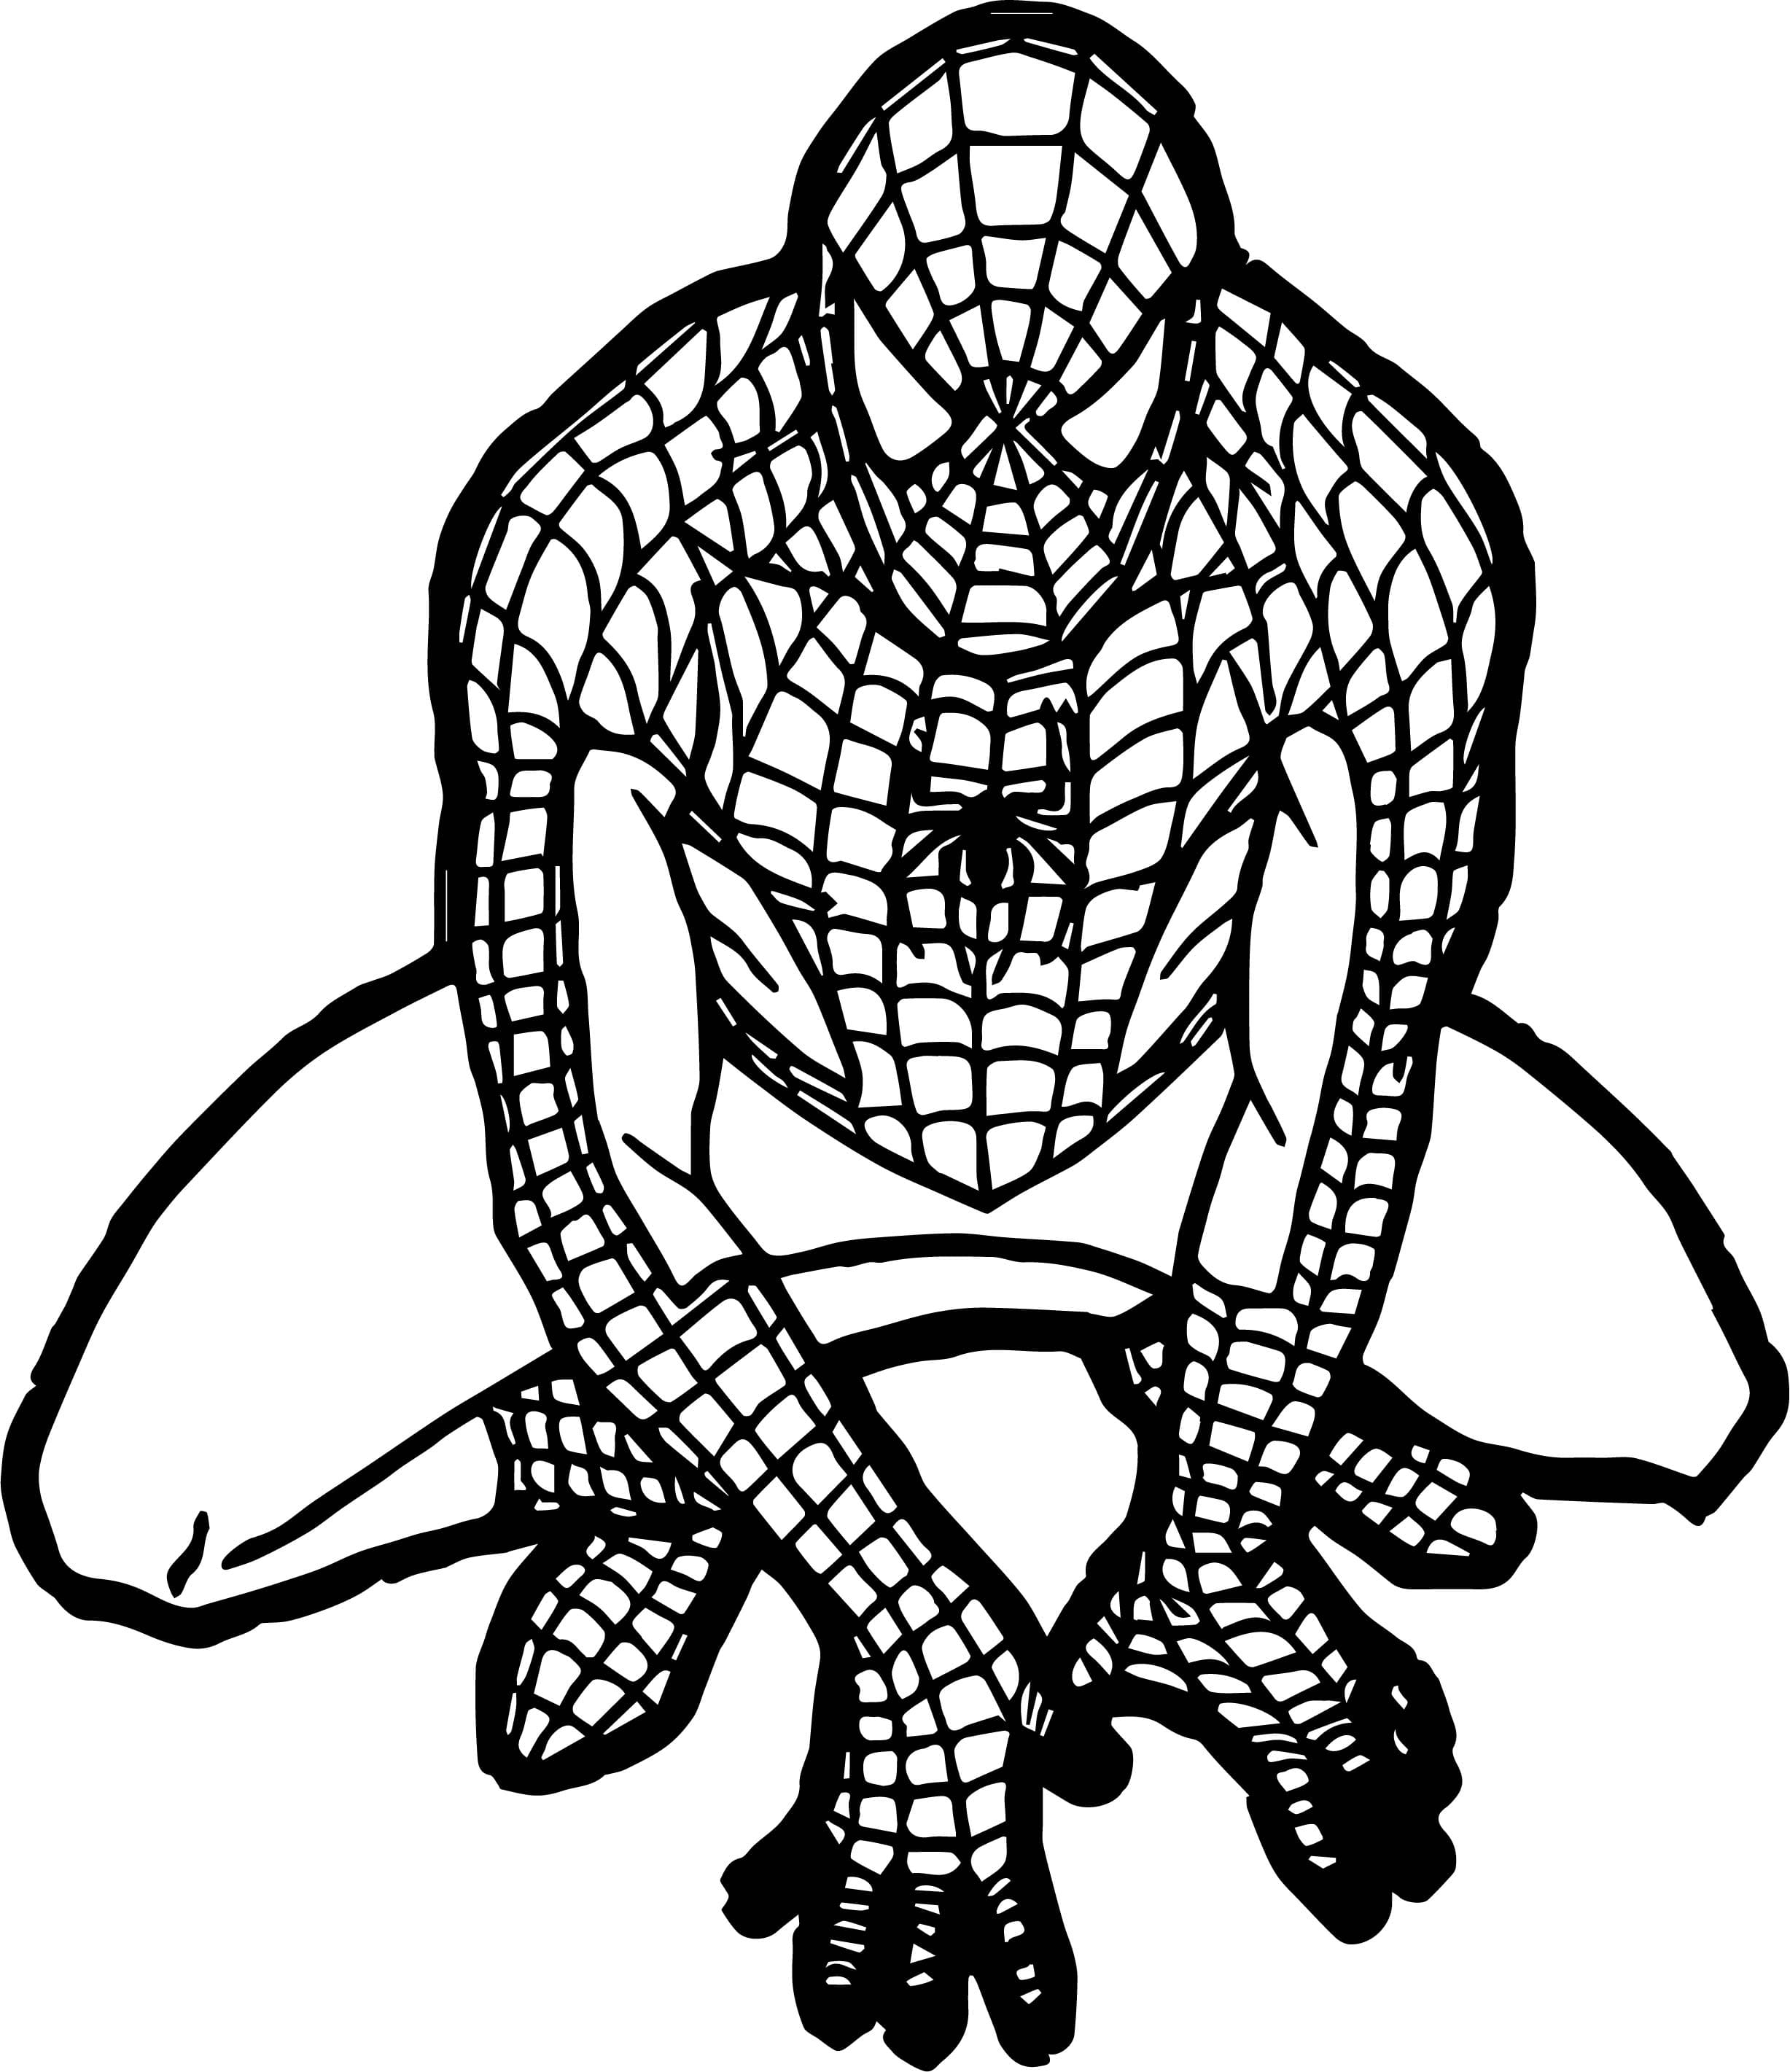 Coloriage Spiderman à imprimer